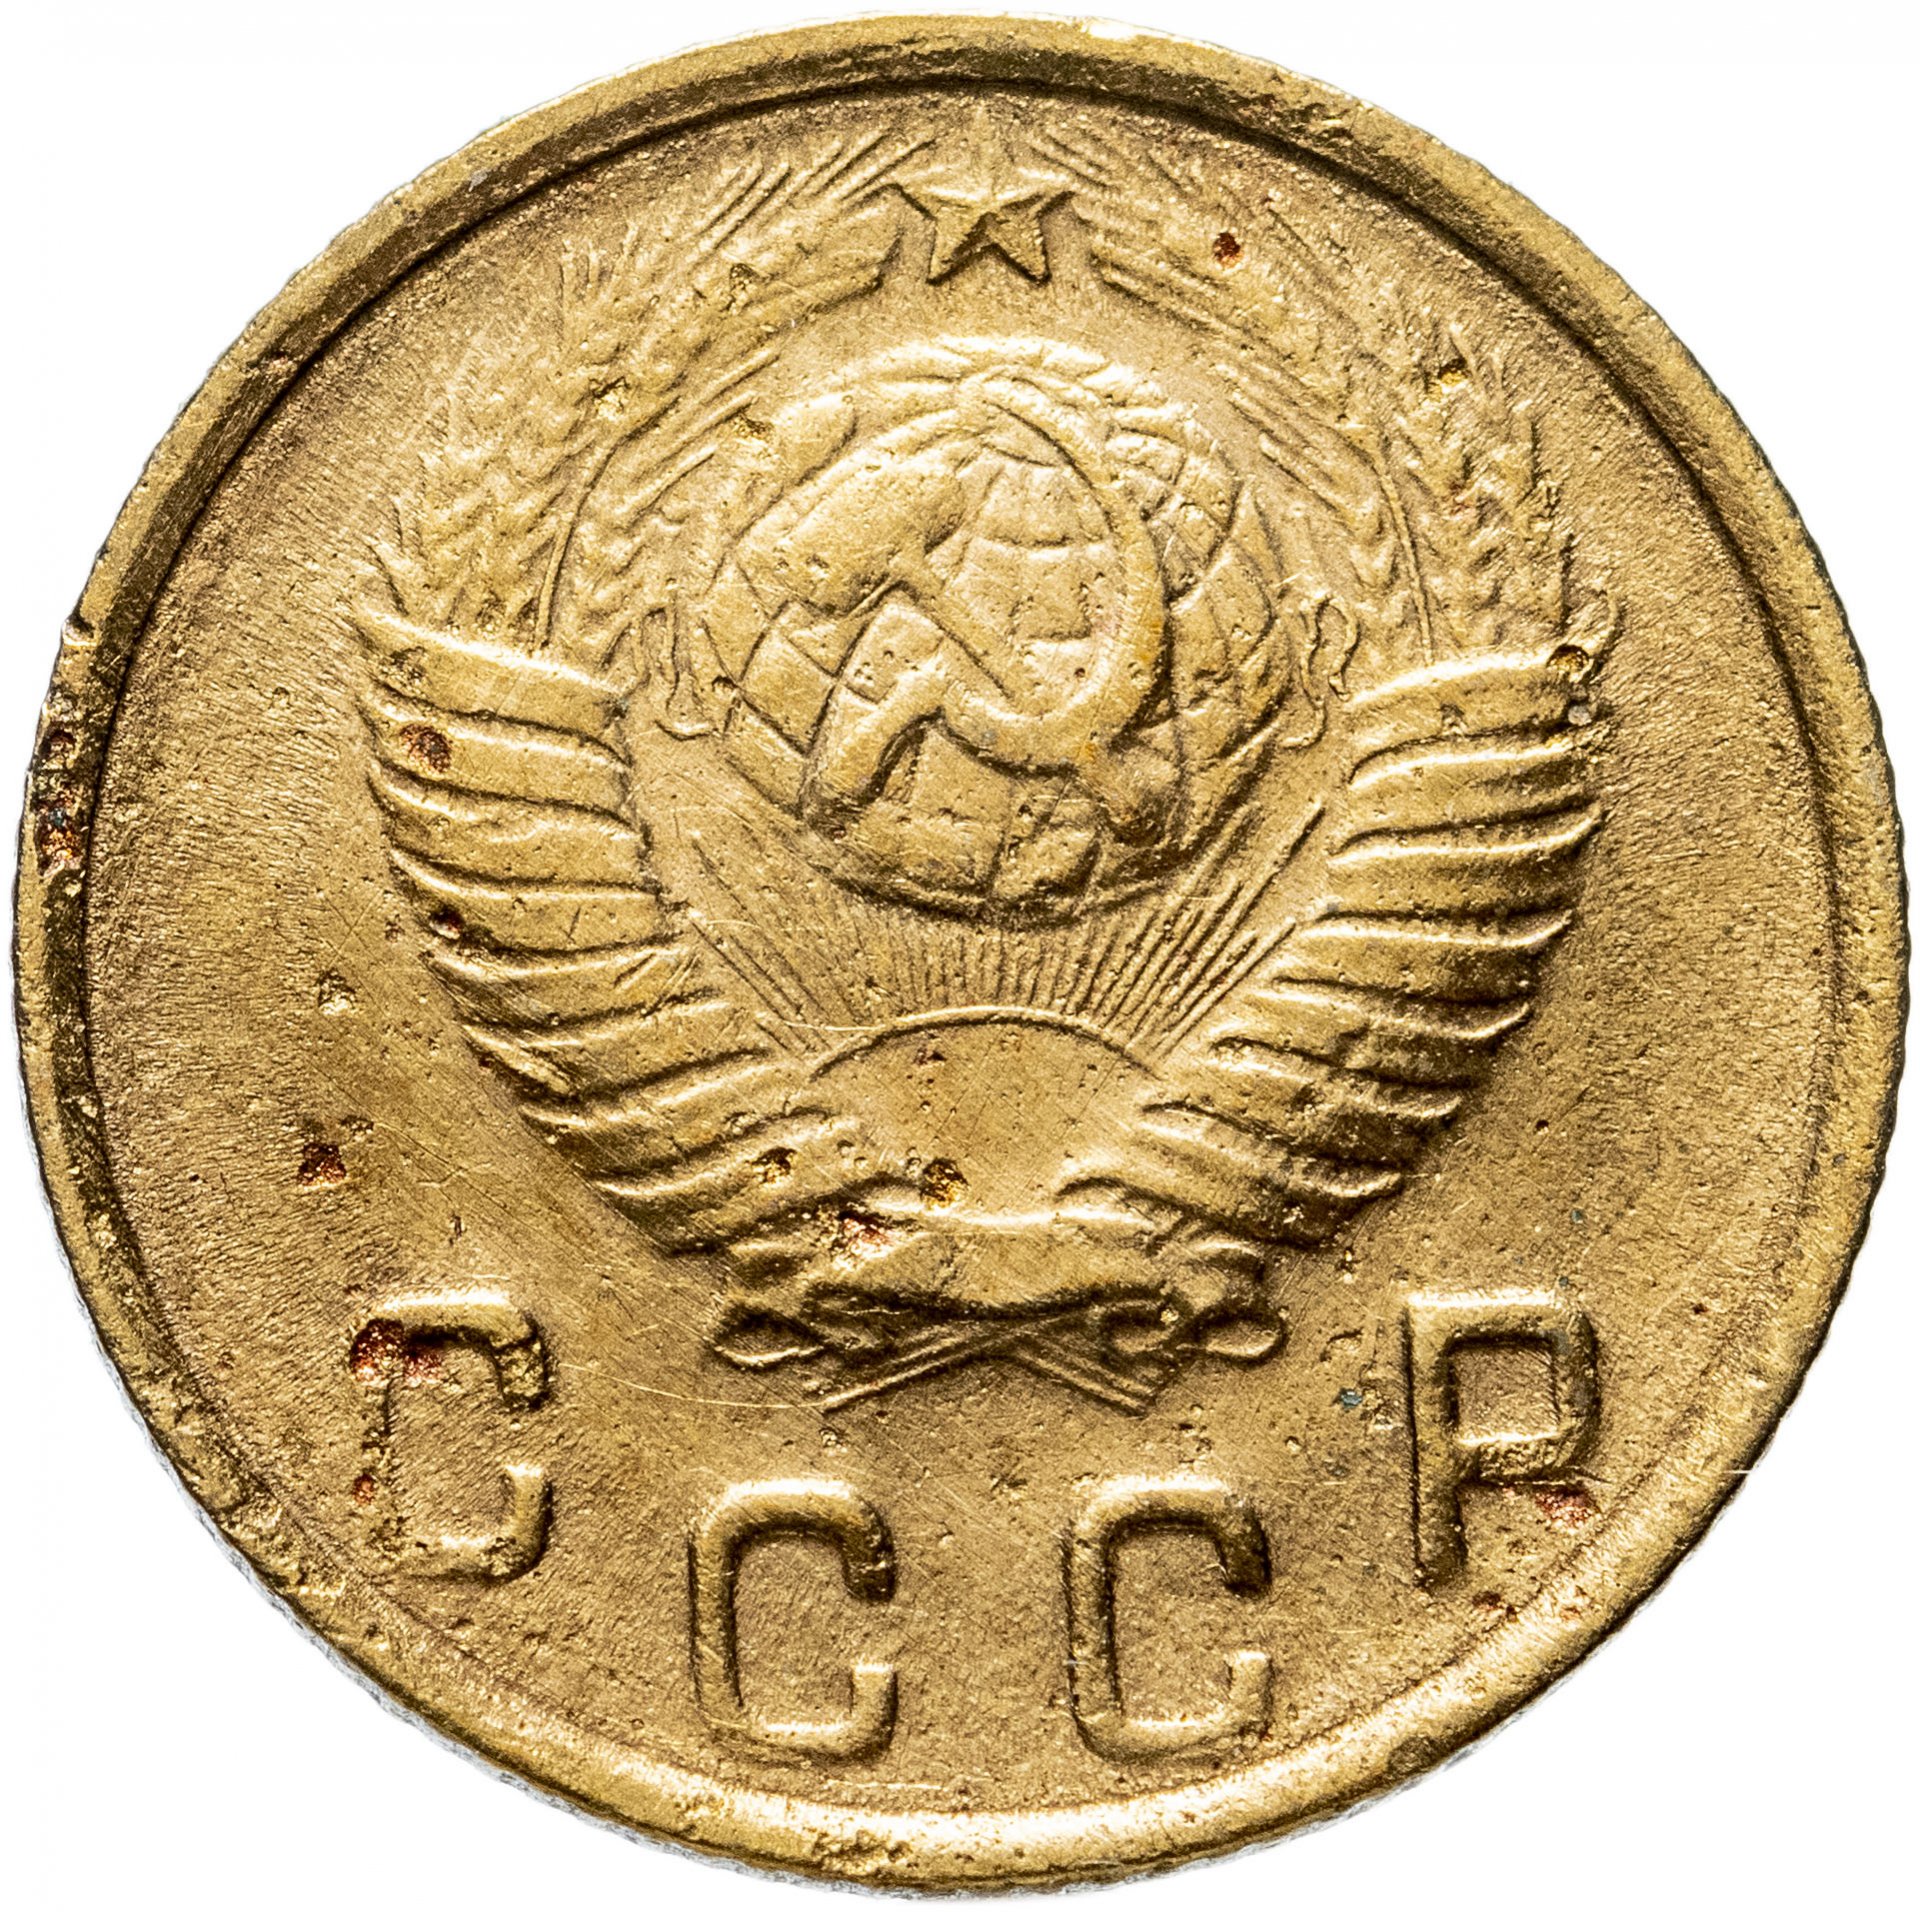 1 Копейка 1975. Монеты 1975. 75 рублей 60